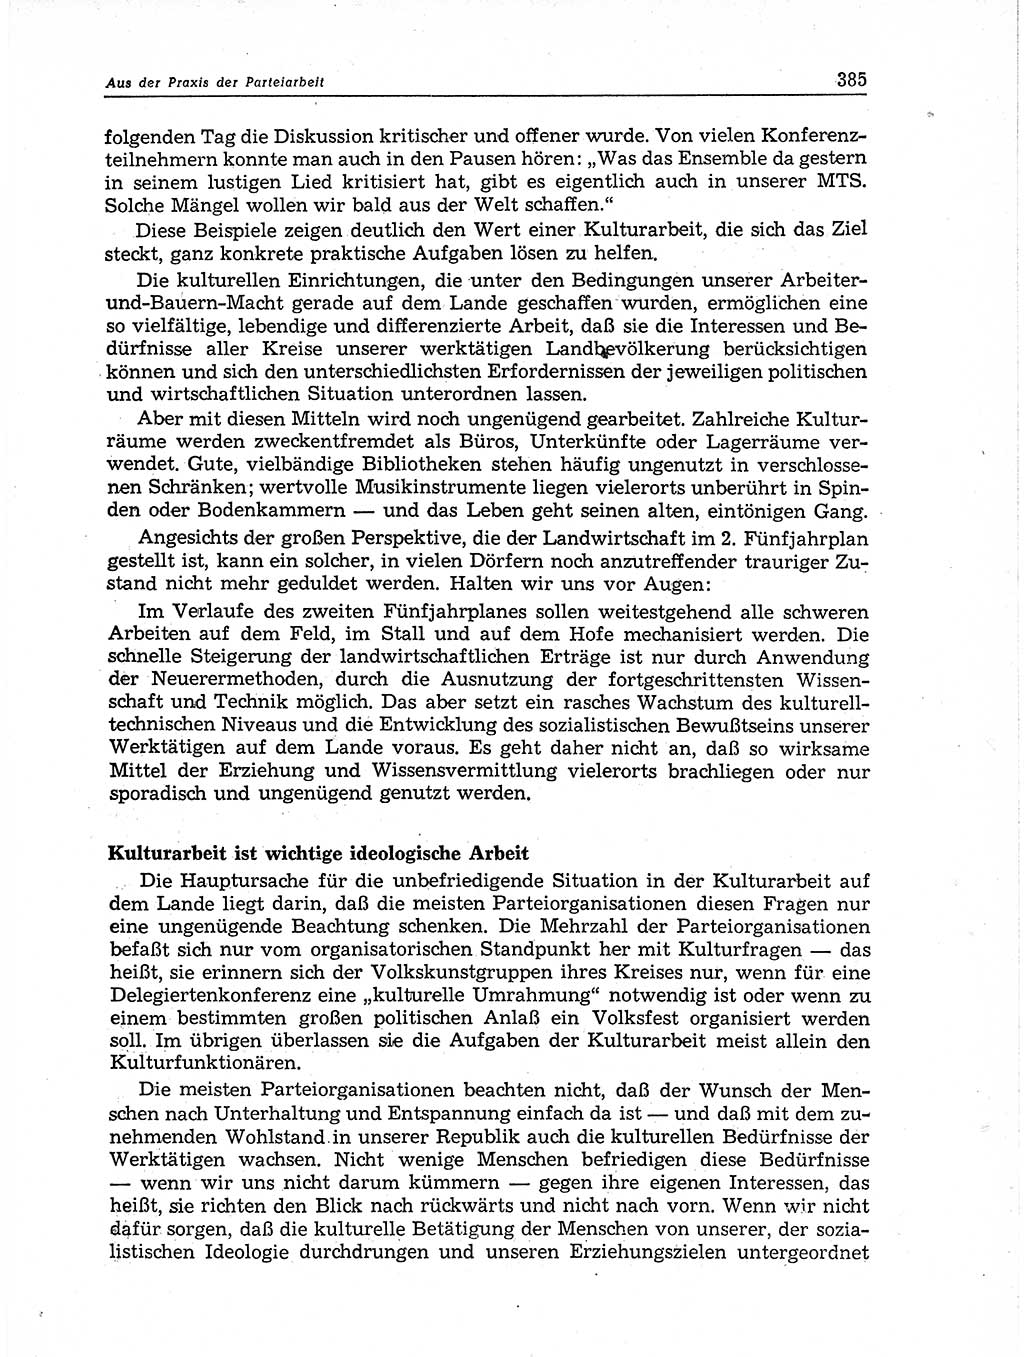 Neuer Weg (NW), Organ des Zentralkomitees (ZK) der SED (Sozialistische Einheitspartei Deutschlands) für Fragen des Parteiaufbaus und des Parteilebens, 11. Jahrgang [Deutsche Demokratische Republik (DDR)] 1956, Seite 385 (NW ZK SED DDR 1956, S. 385)